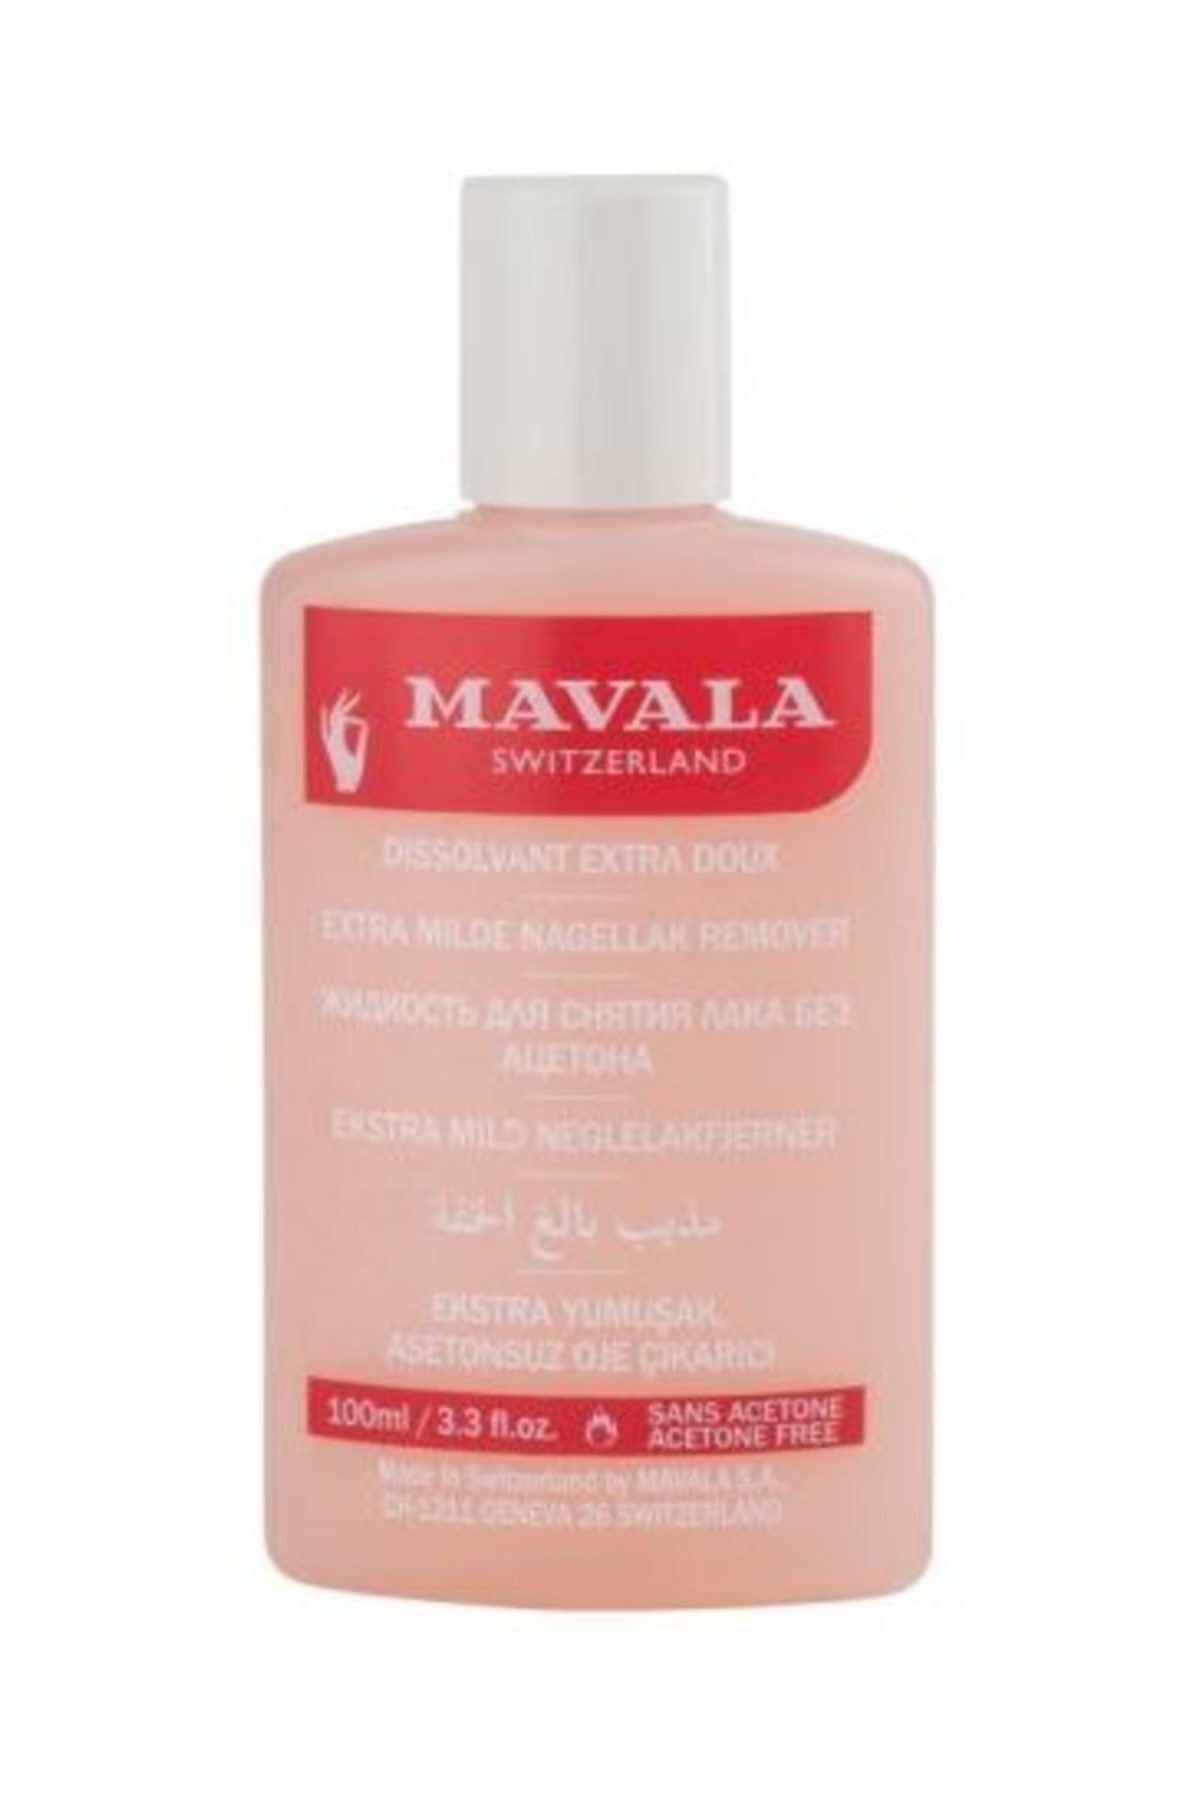 Mavala Extra Mild Nail Polish Remover 100ml